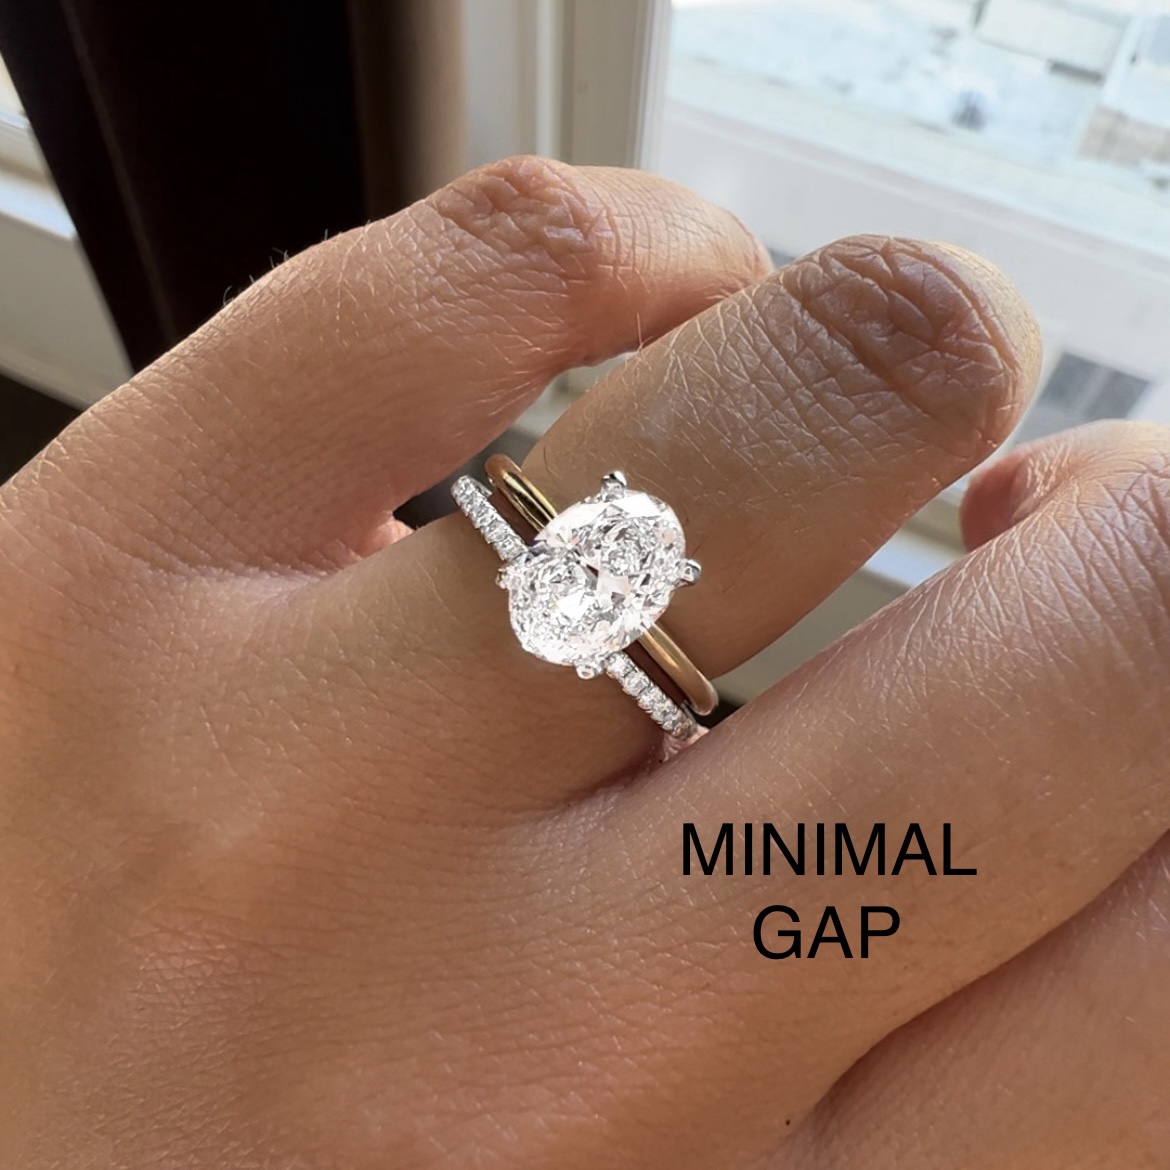 Gap btwn engagement ring and wedding bandI